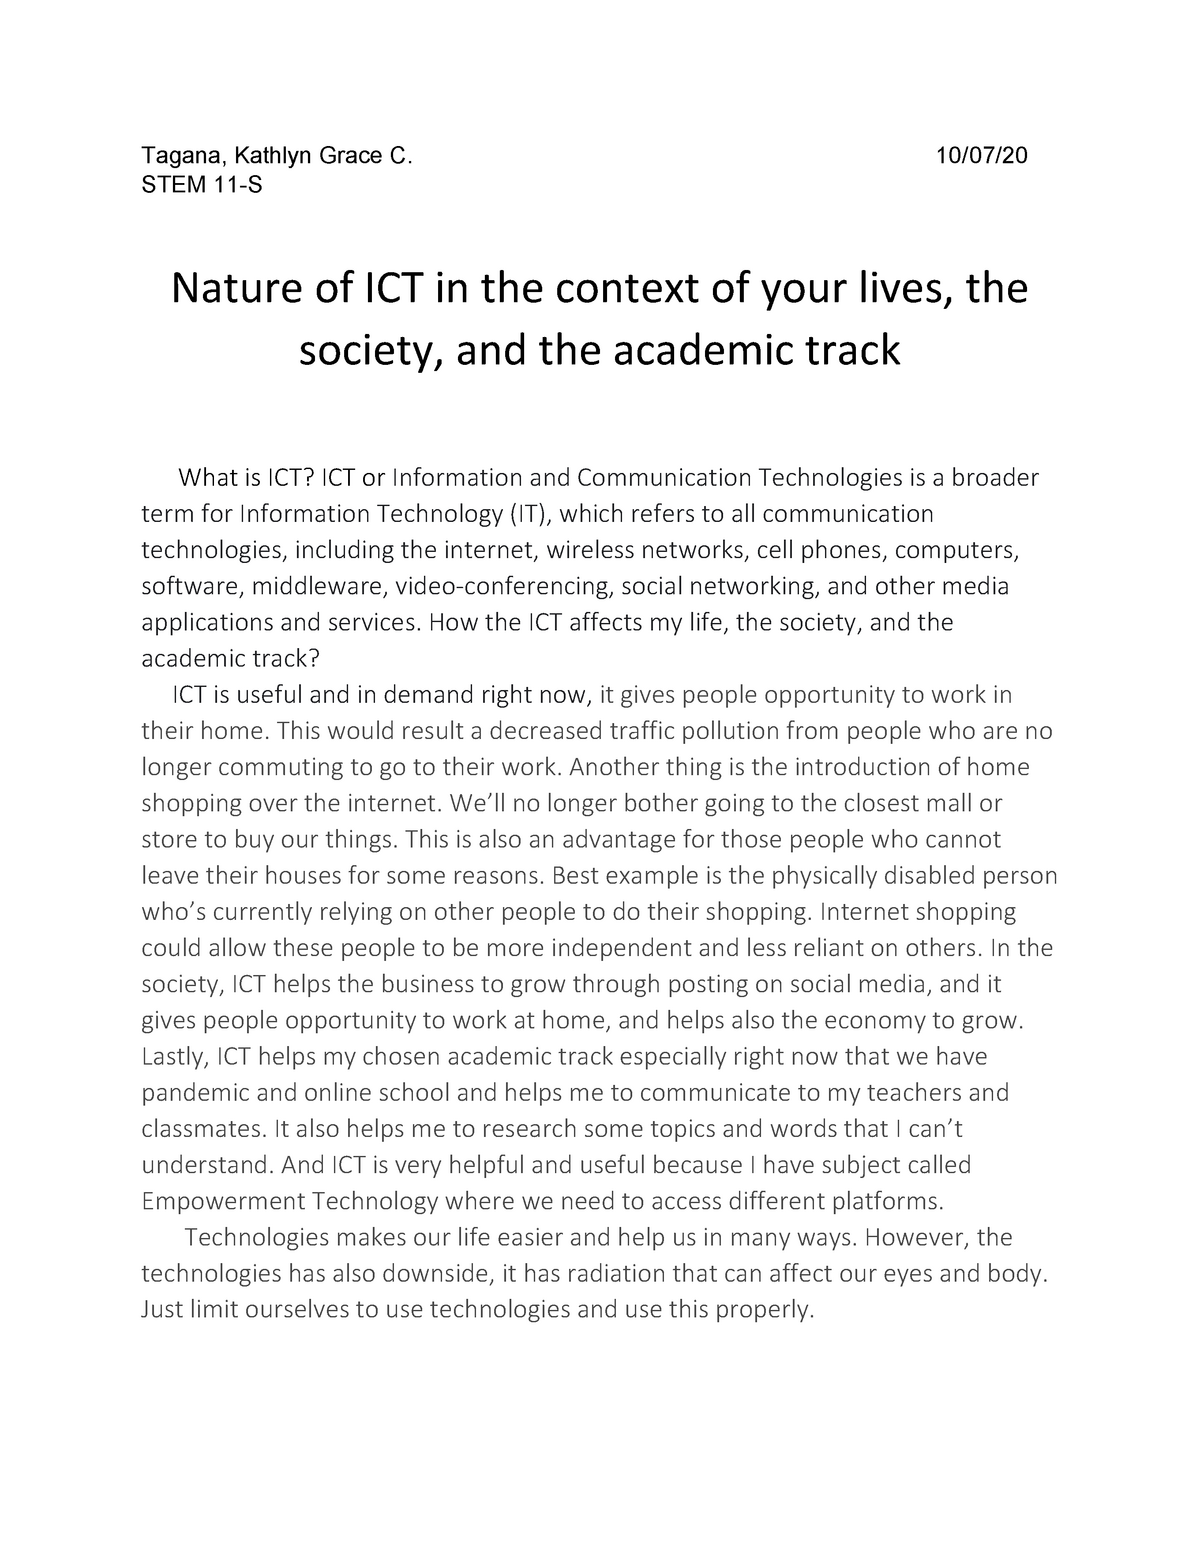 ict in education short essay